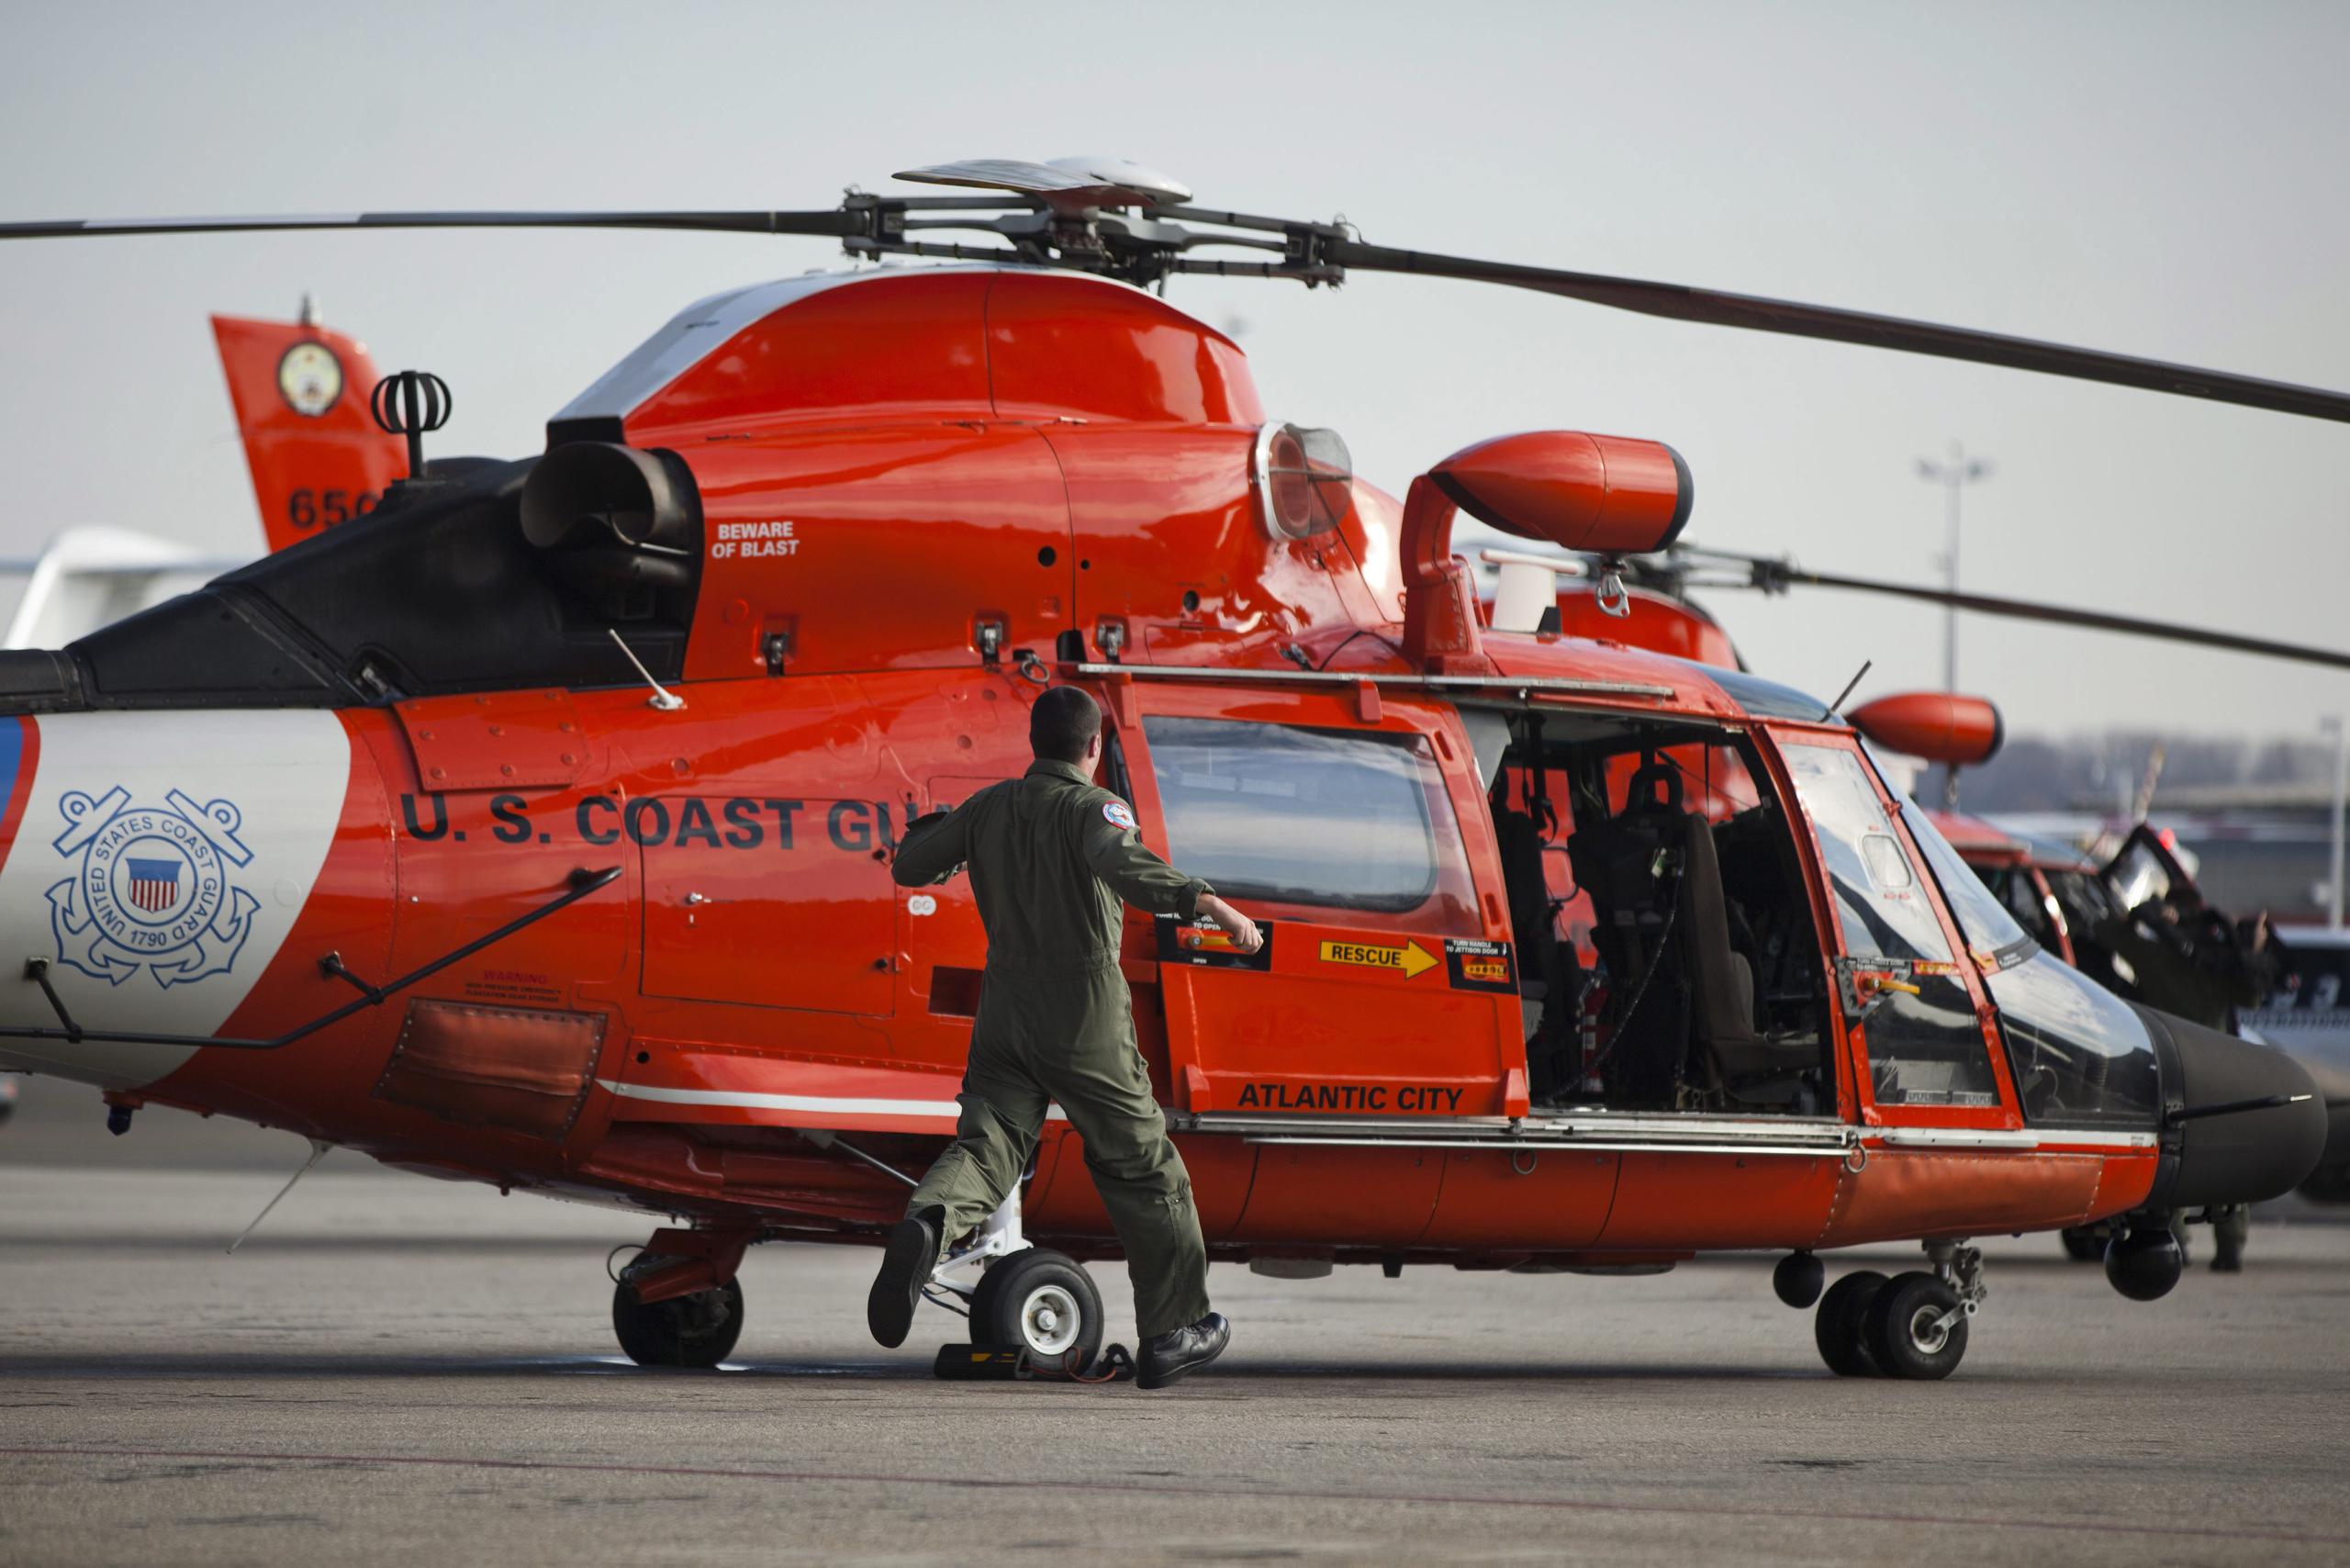 Un helicóptero de la Guardia Costera. (Imagen de archivo/EFE/JIM LO SCALZO)